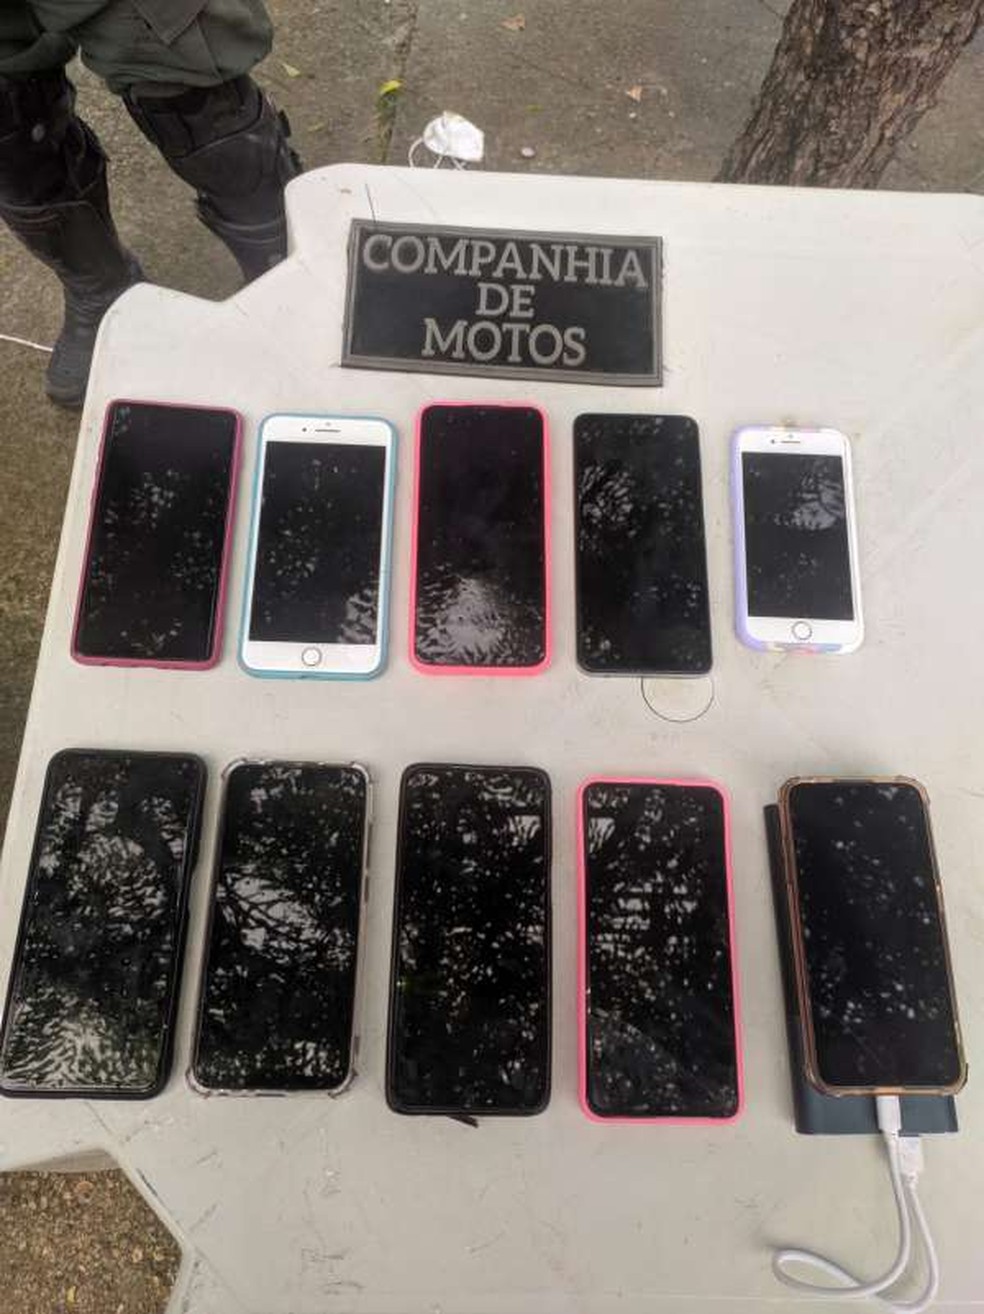 Os dez aparelhos foram recuperados e levados para a Delegacia Metropolitana de Maracanaú — Foto: PMCE